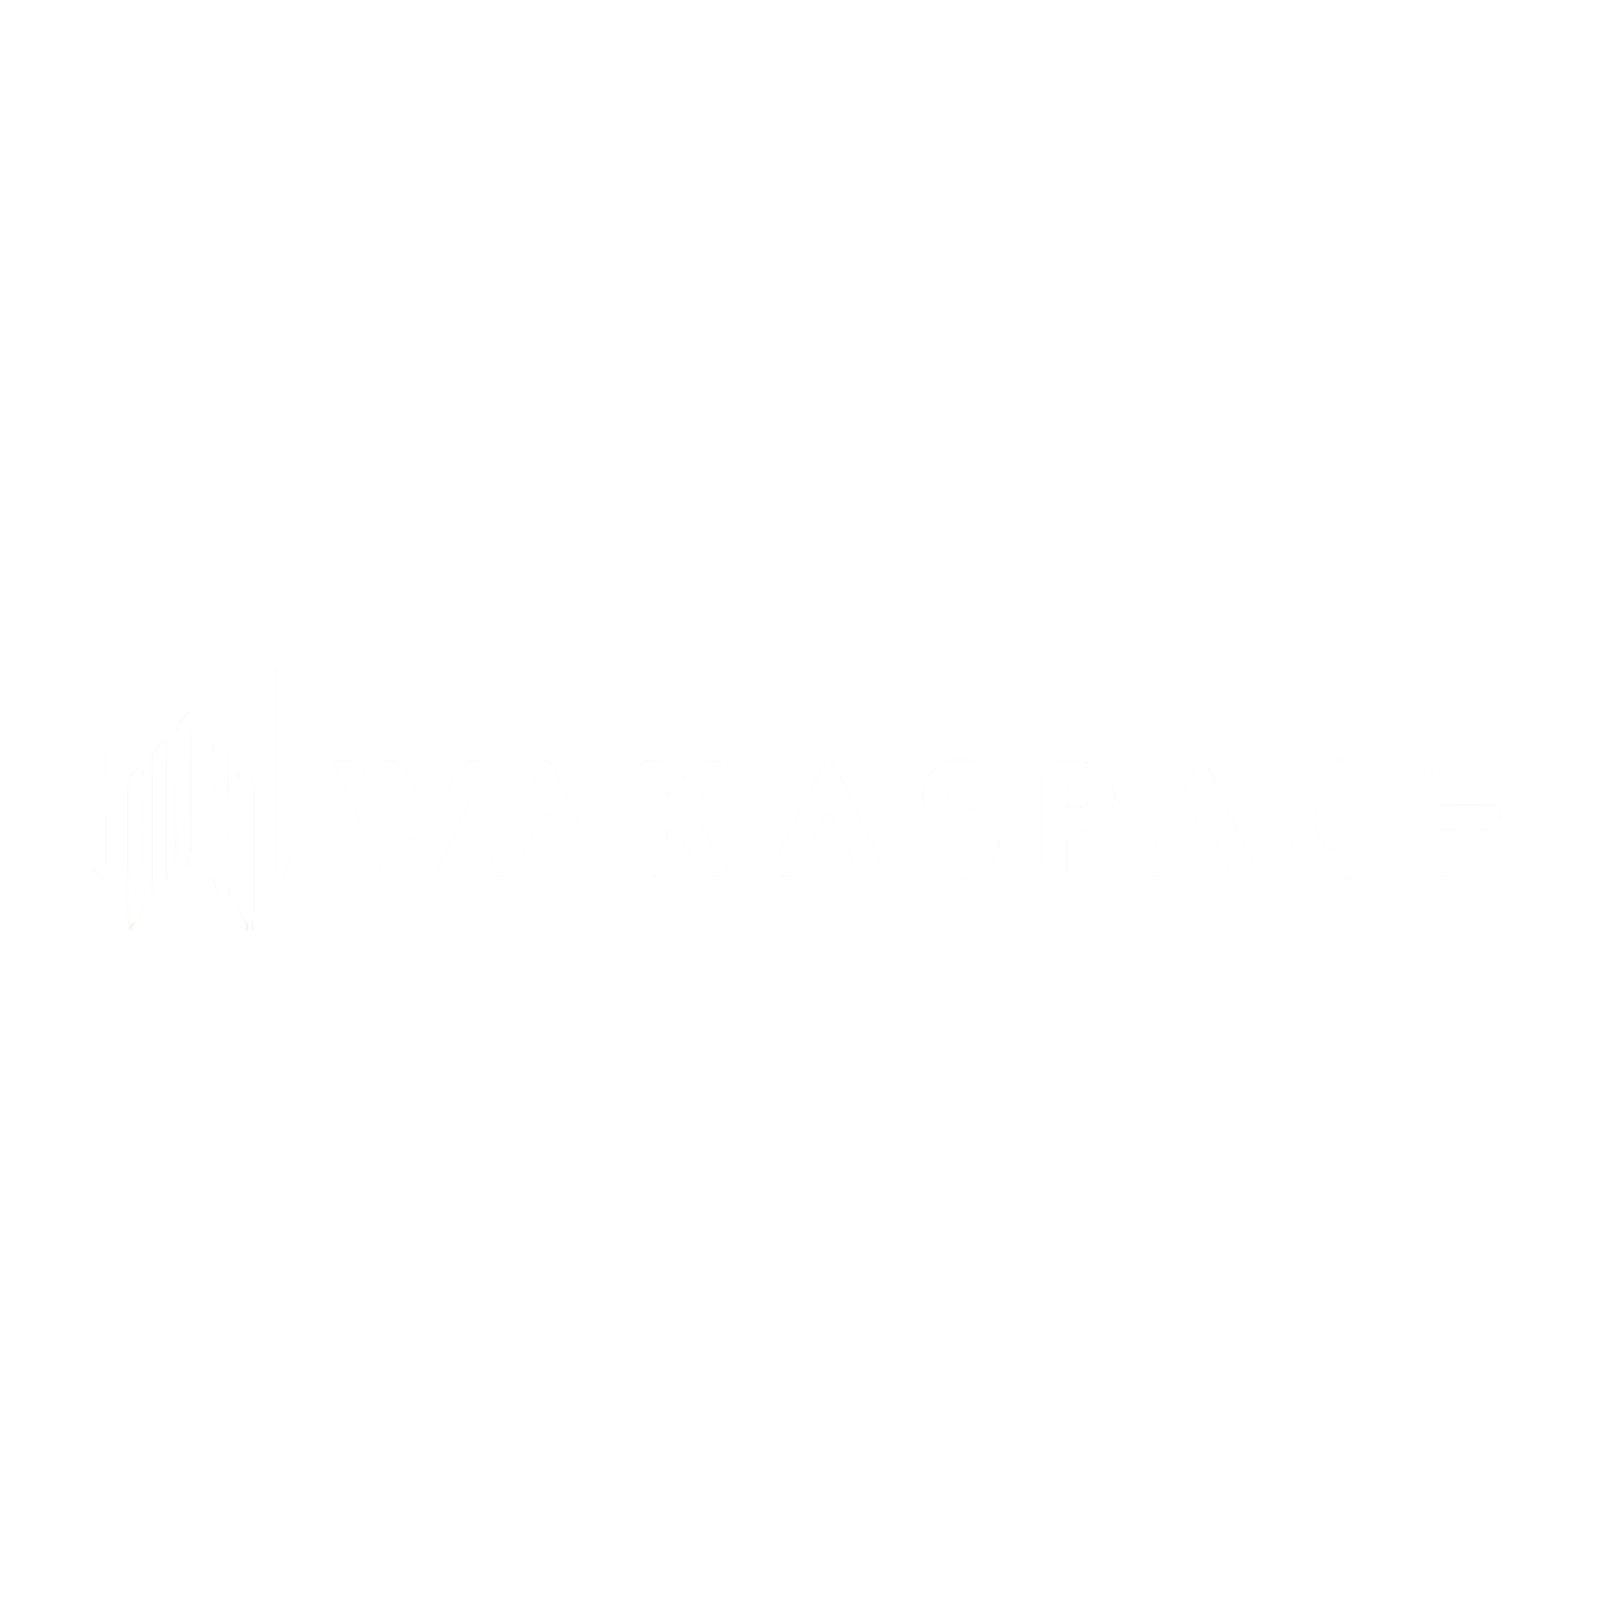 WAKASPACE